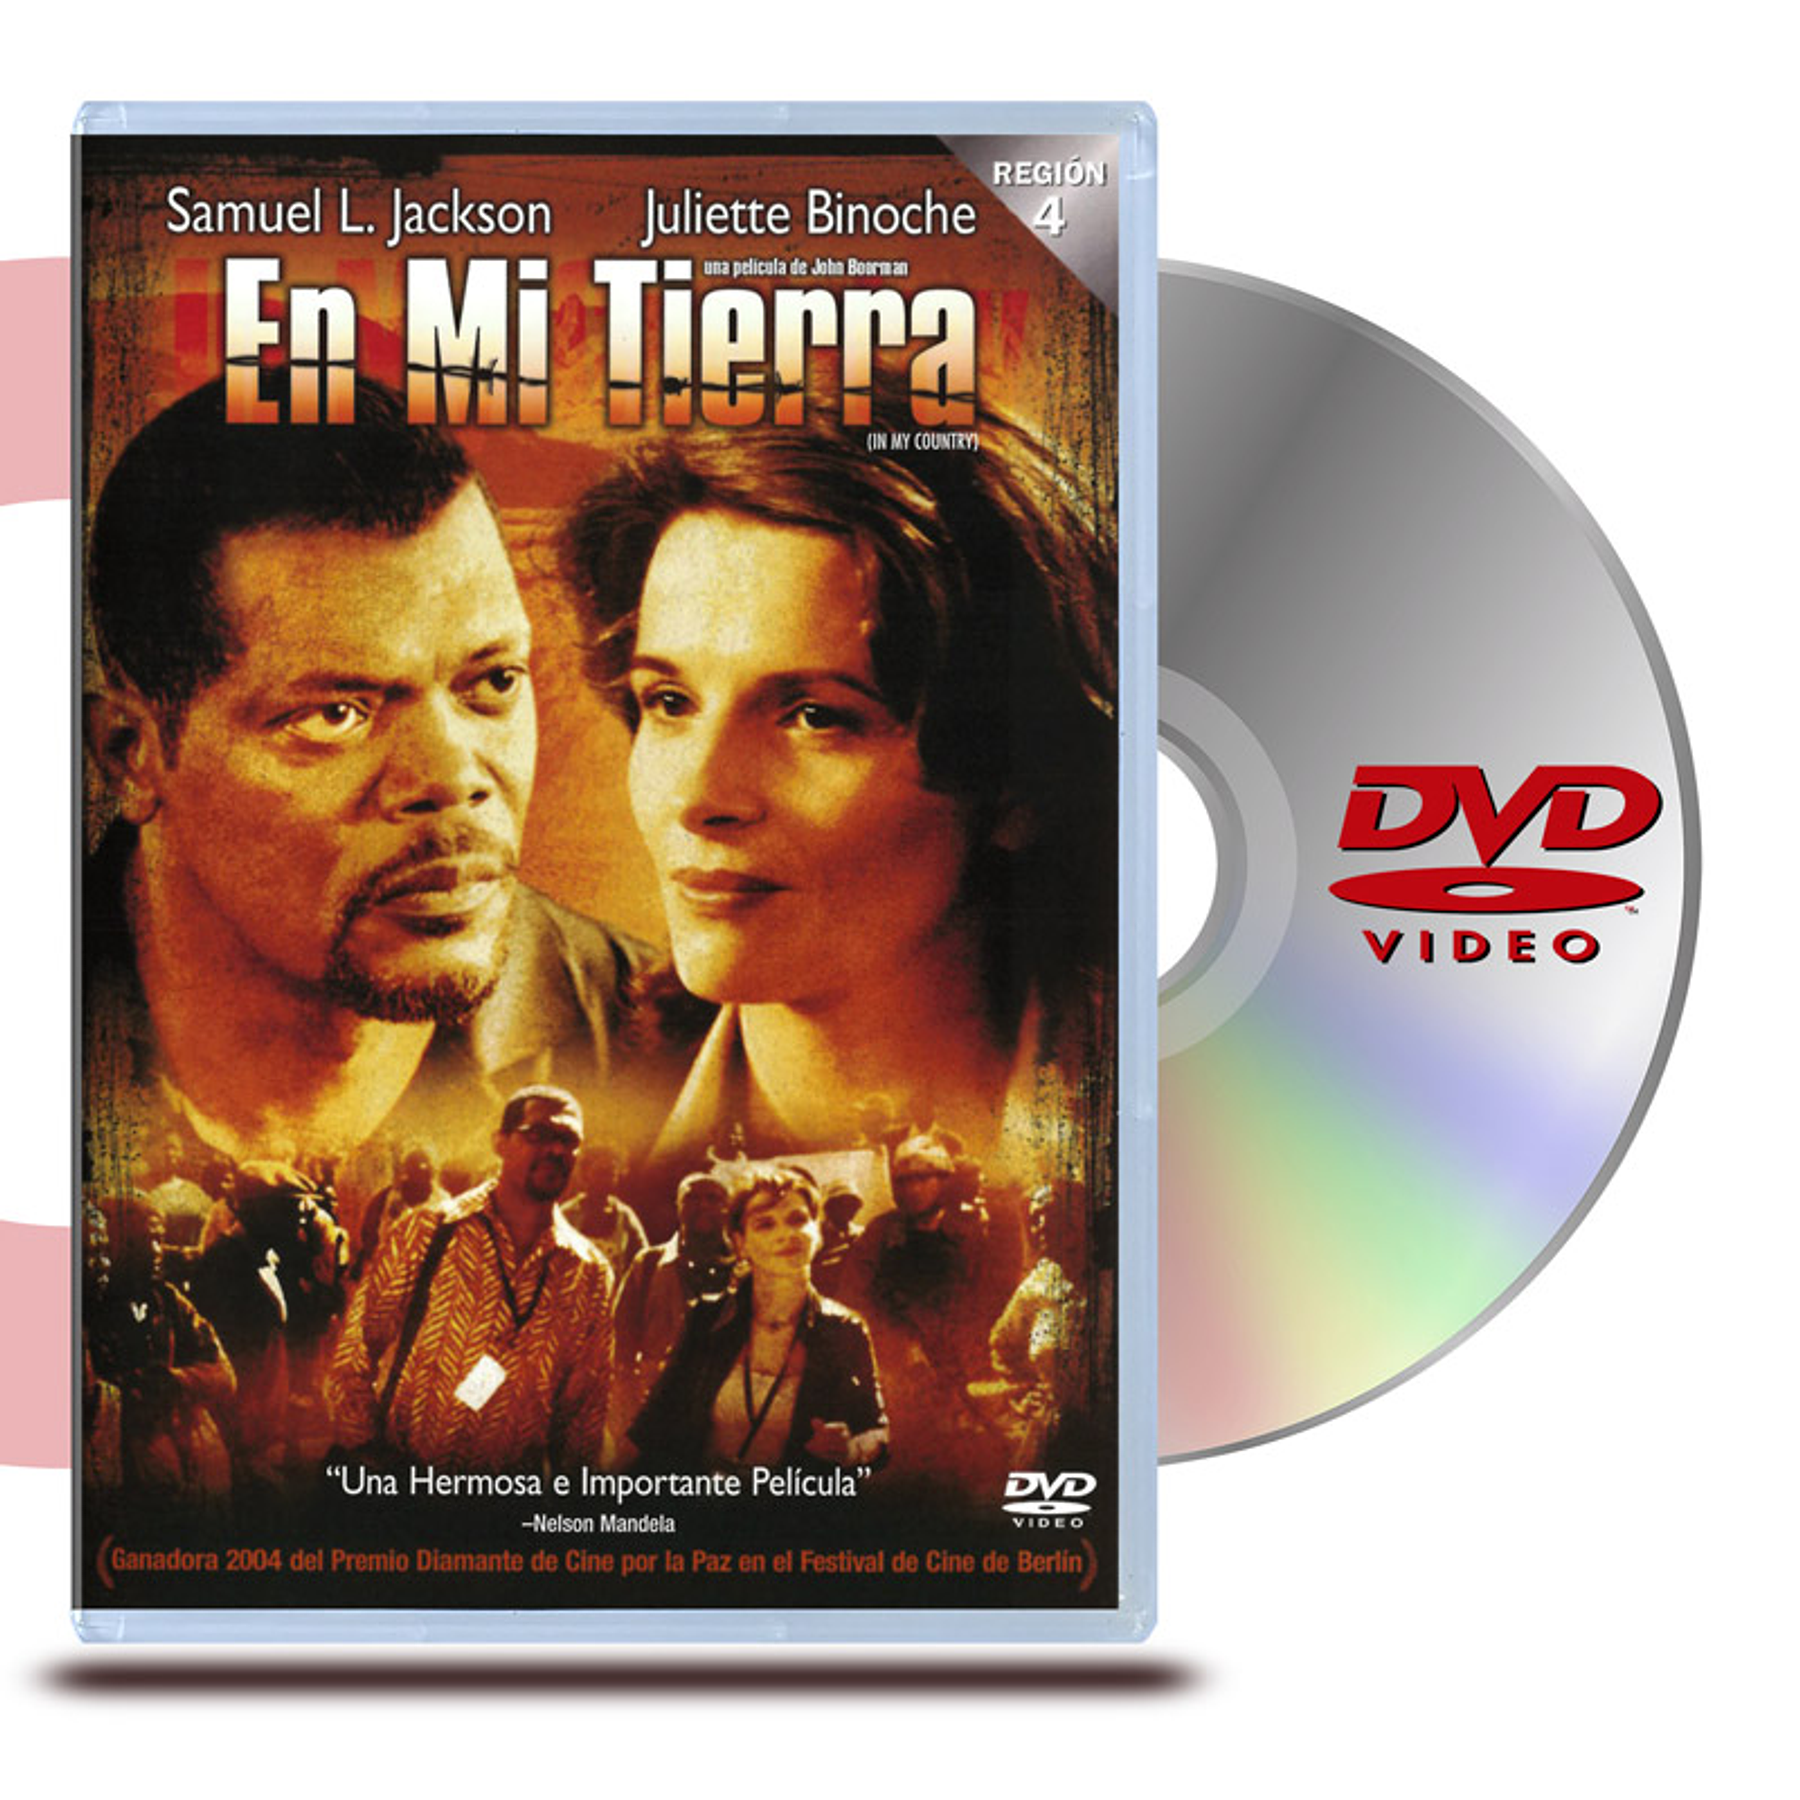 DVD EN MI TIERRA